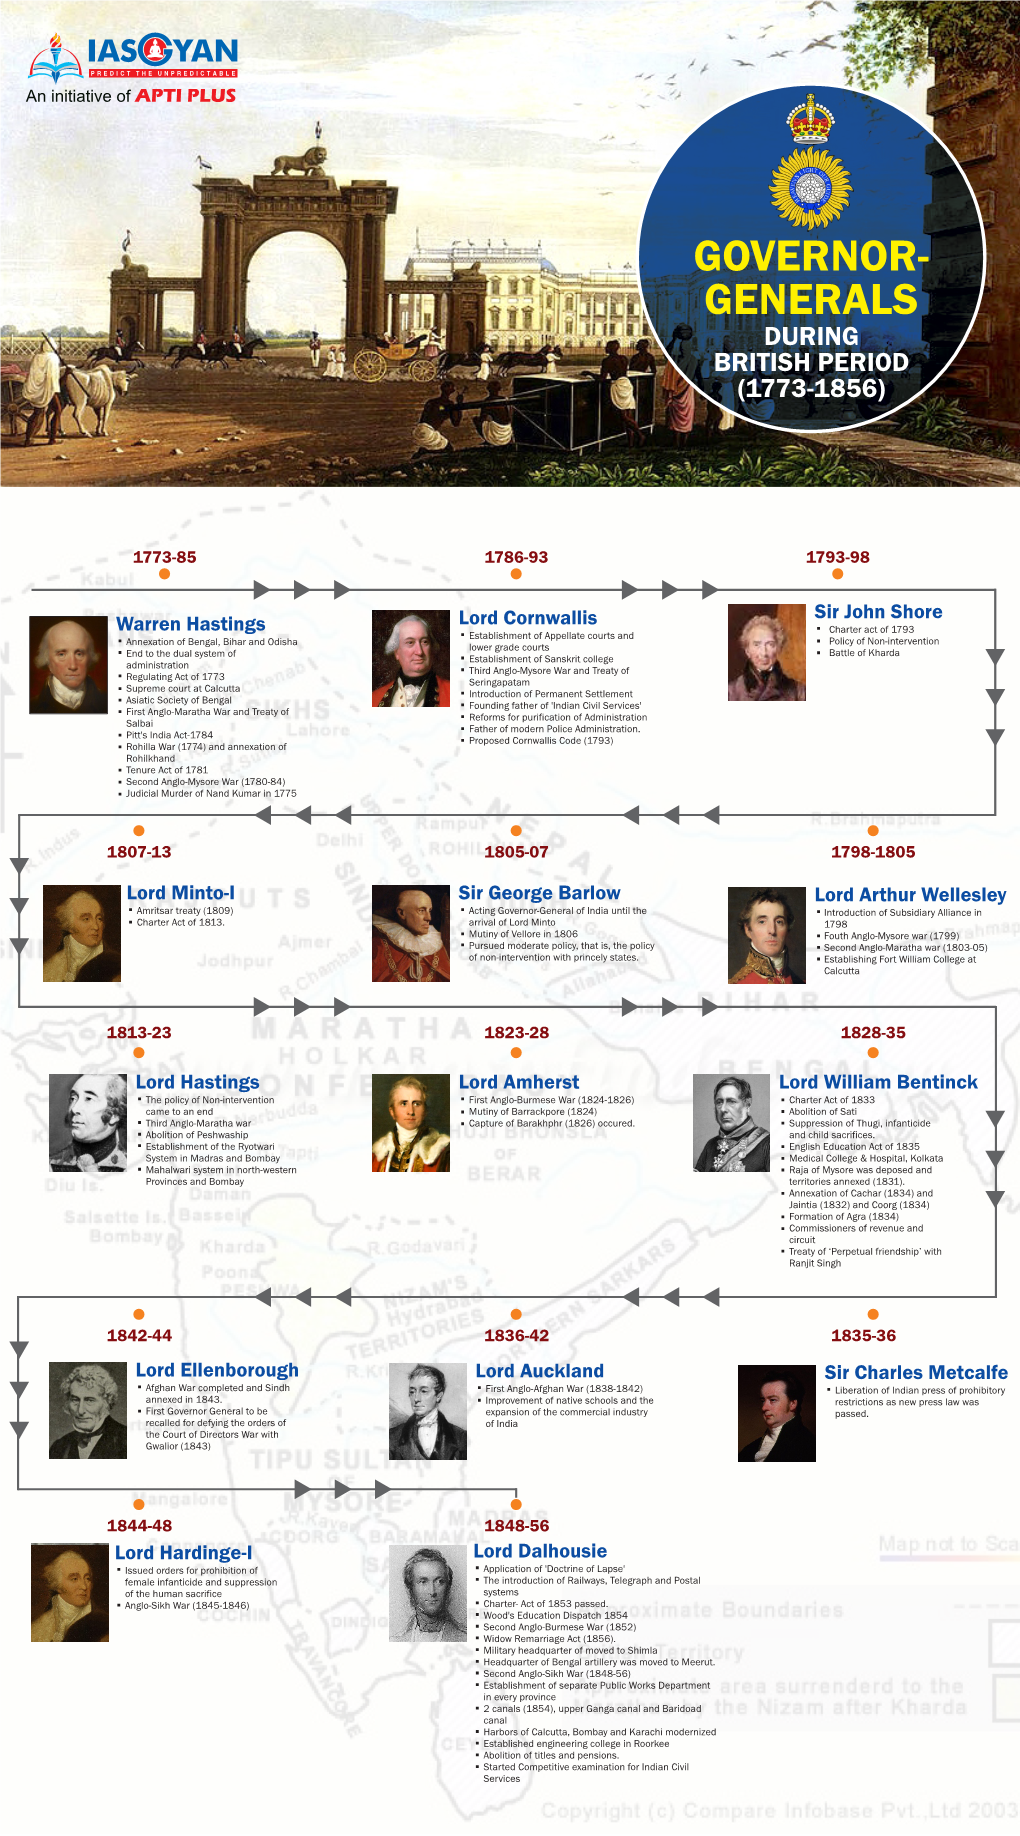 Governor- Generals During British Period (1773-1856)